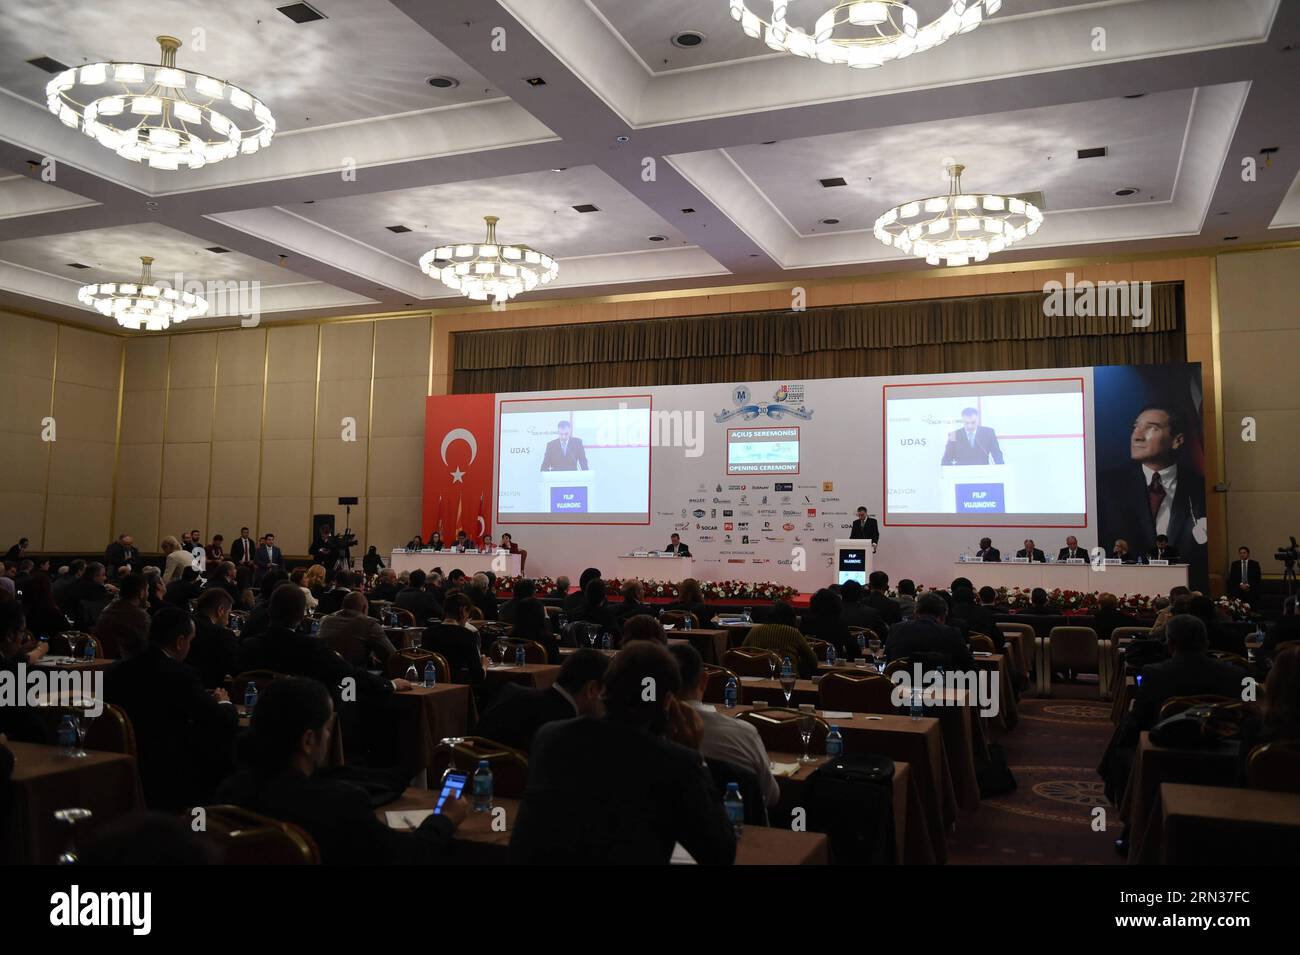 ISTANBUL, avril 8,2015 -- les délégués assistent à la cérémonie d'ouverture du 18e Sommet de l'économie eurasienne à Istanbul, Turquie, le 8 avril 2015. L'initiative de la route de la soie a été présentée comme le nouveau modèle de coopération pour le 21e siècle lors du Sommet de l'économie eurasienne à Istanbul mercredi. ) SOMMET TURQUIE-ISTANBUL-ÉCONOMIE EURASIENNE HexCanling PUBLICATIONxNOTxINxCHN Istanbul avril 8 2015 les délégués assistent à la cérémonie d'ouverture du 18e Sommet de l'économie EURASIENNE à Istanbul Turquie avril 8 2015 l'Initiative de la route de la soie a été présentée comme le nouveau modèle de coopération pour le 21e siècle À L'ère Banque D'Images